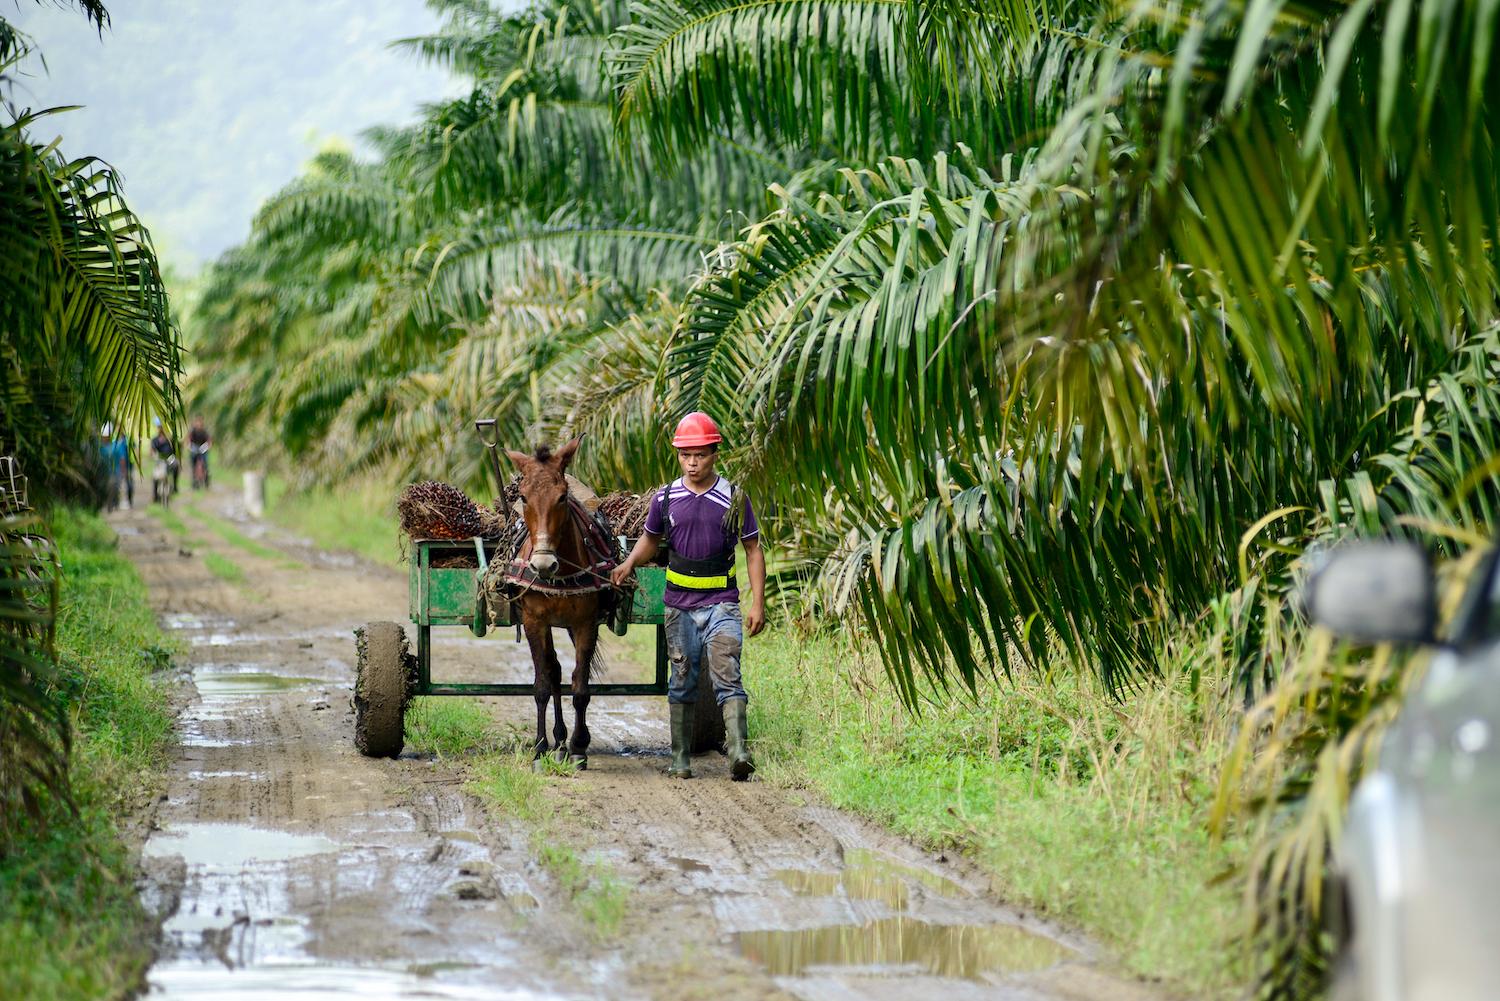 sustainable palm oil - palm oil farm - palm oil farmer